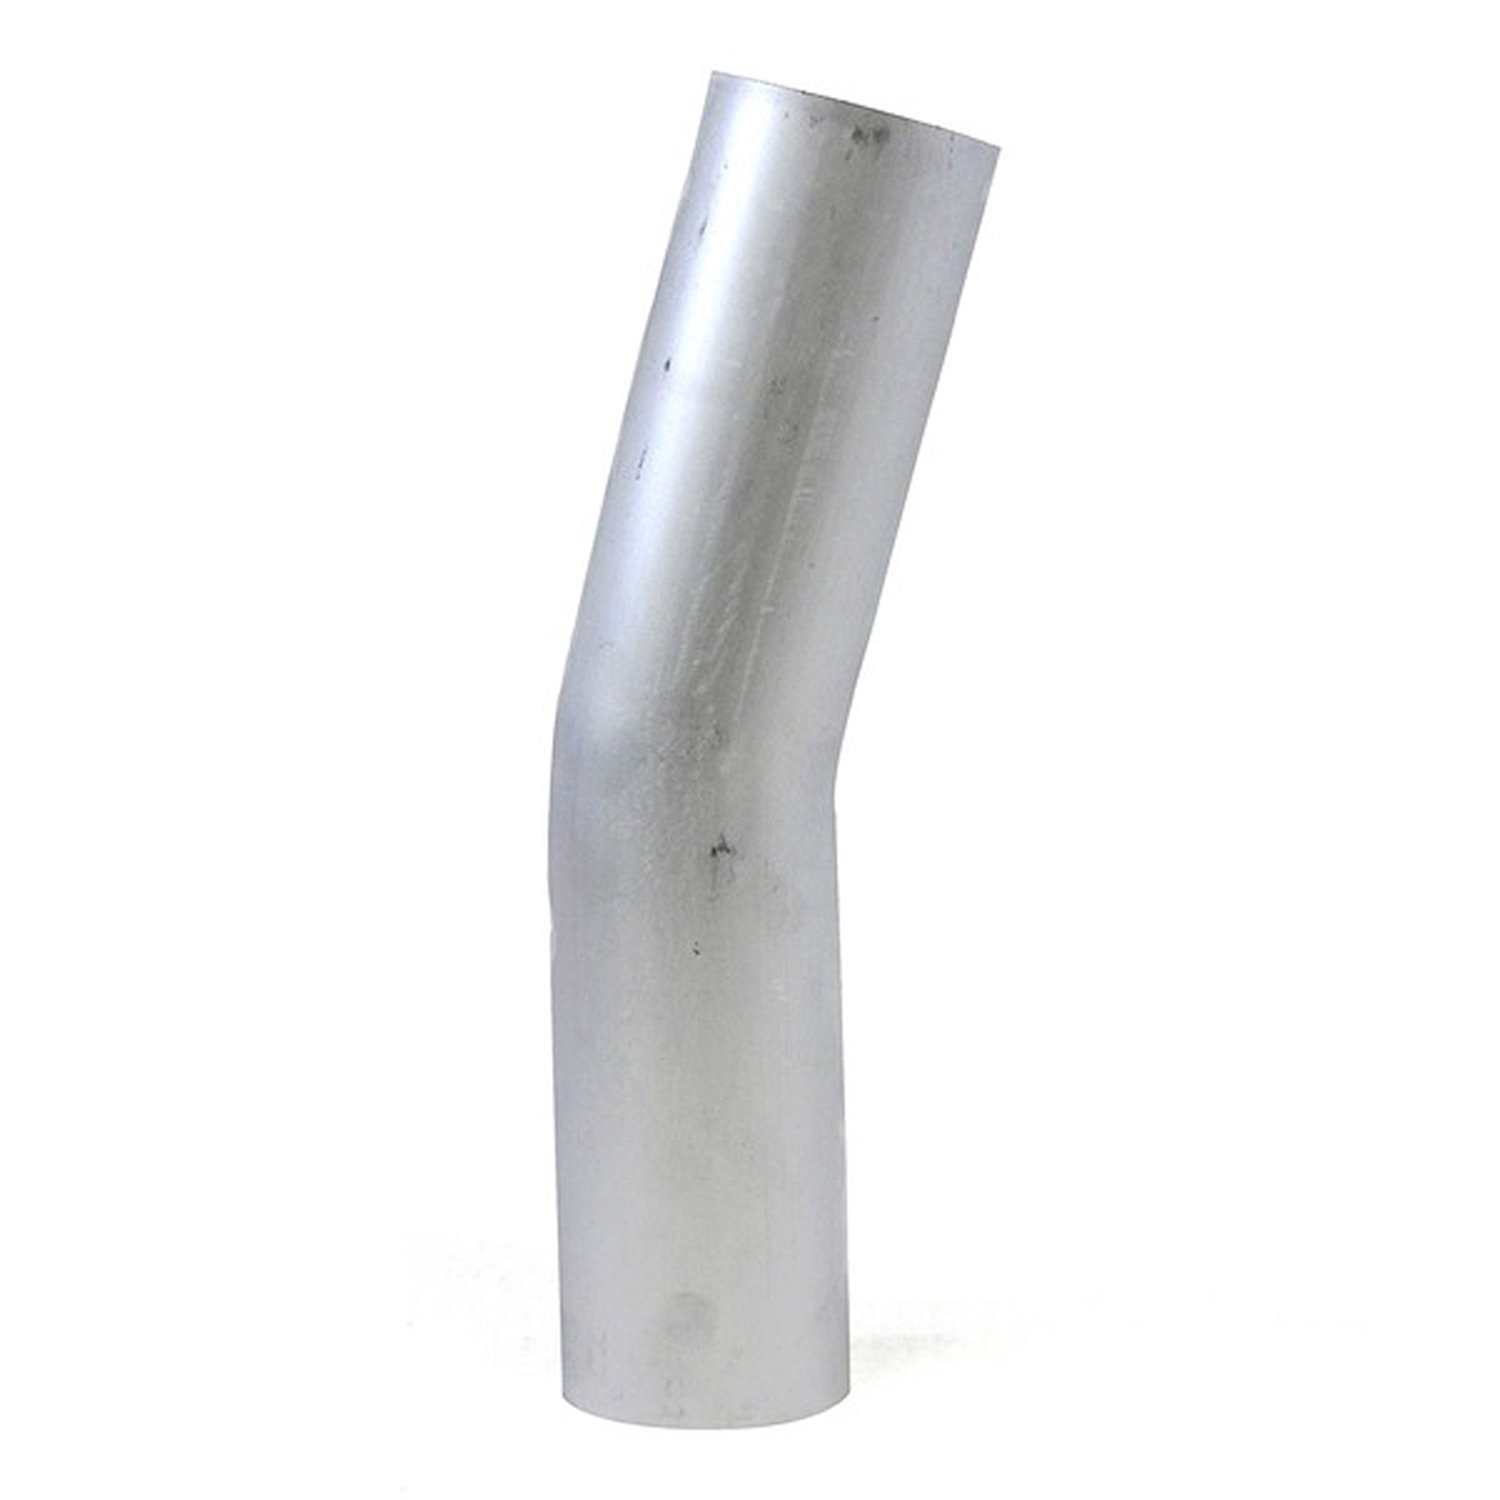 AT15-450-CLR-6 Aluminum Elbow Tube, 6061 Aluminum, 15-Degree Bend Elbow Tubing, 4-1/2 in. OD, Large Radius, 6 in. CLR